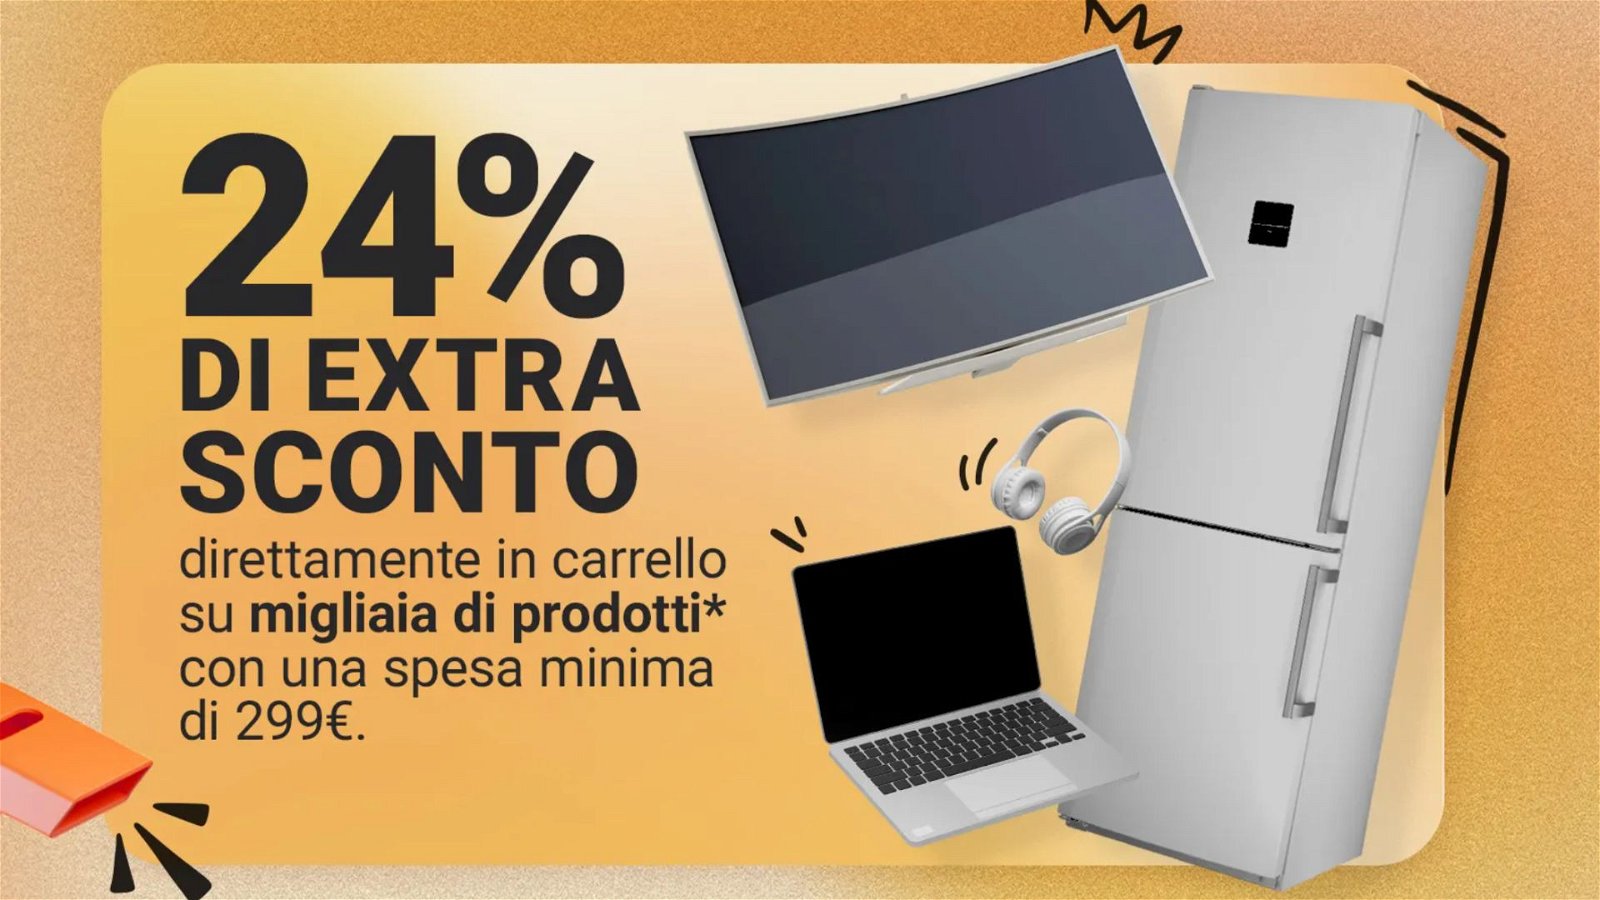 Immagine di Follia Unieuro: extra sconto del 24% sui tuoi acquisti, ma SOLO fino al 9 giugno!